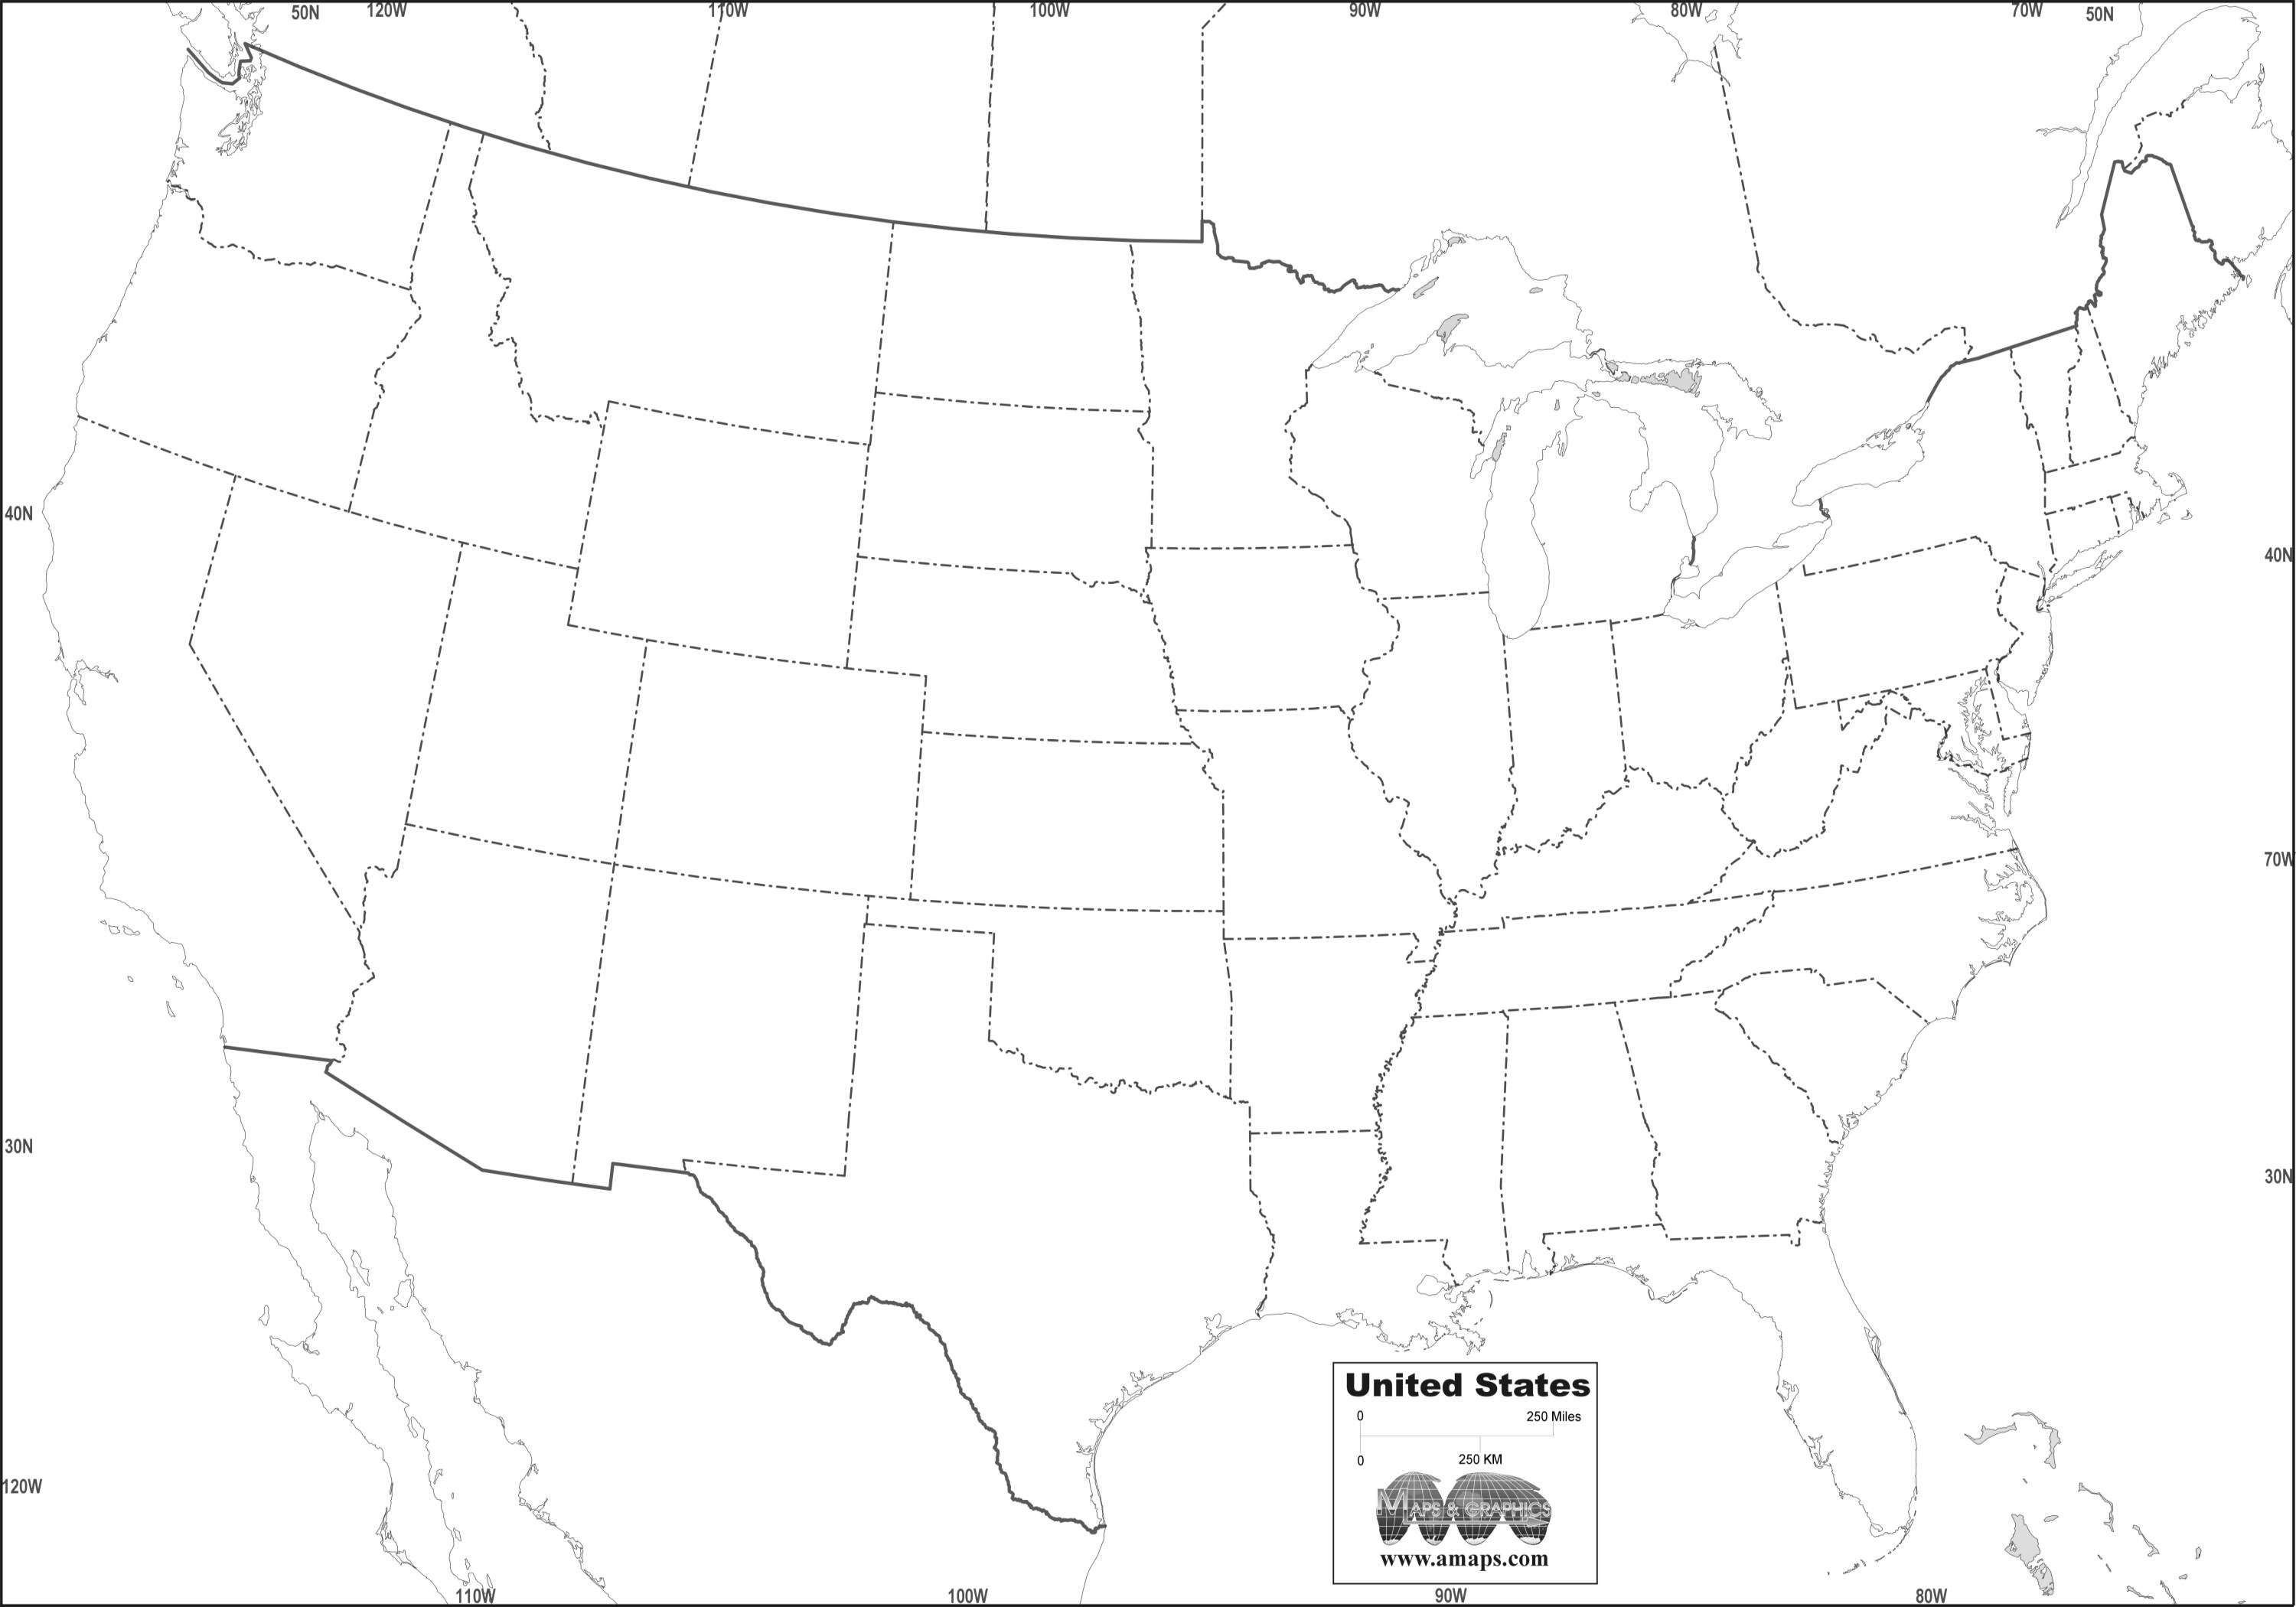 Контурные карты штатов. Карта Штатов США пустая. 50 Штатов США контурнаяксрта. Контурная карта Штатов США. Карта Штатов Америки пустая.